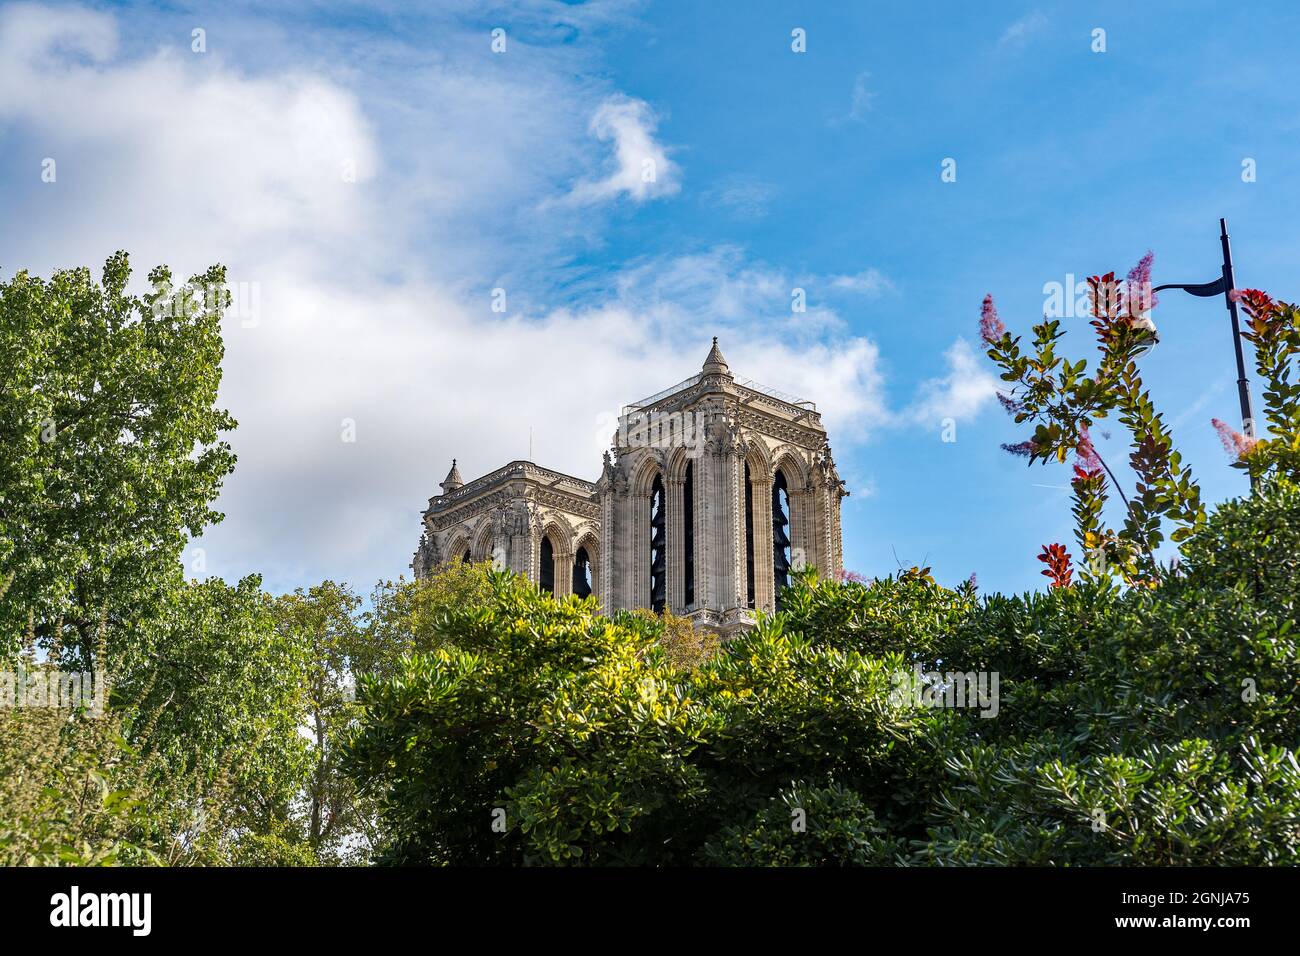 Die Glockentürme von Notre Dame in Paris nach einem verheerenden Brand, der sein Dach zerstörte Stockfoto